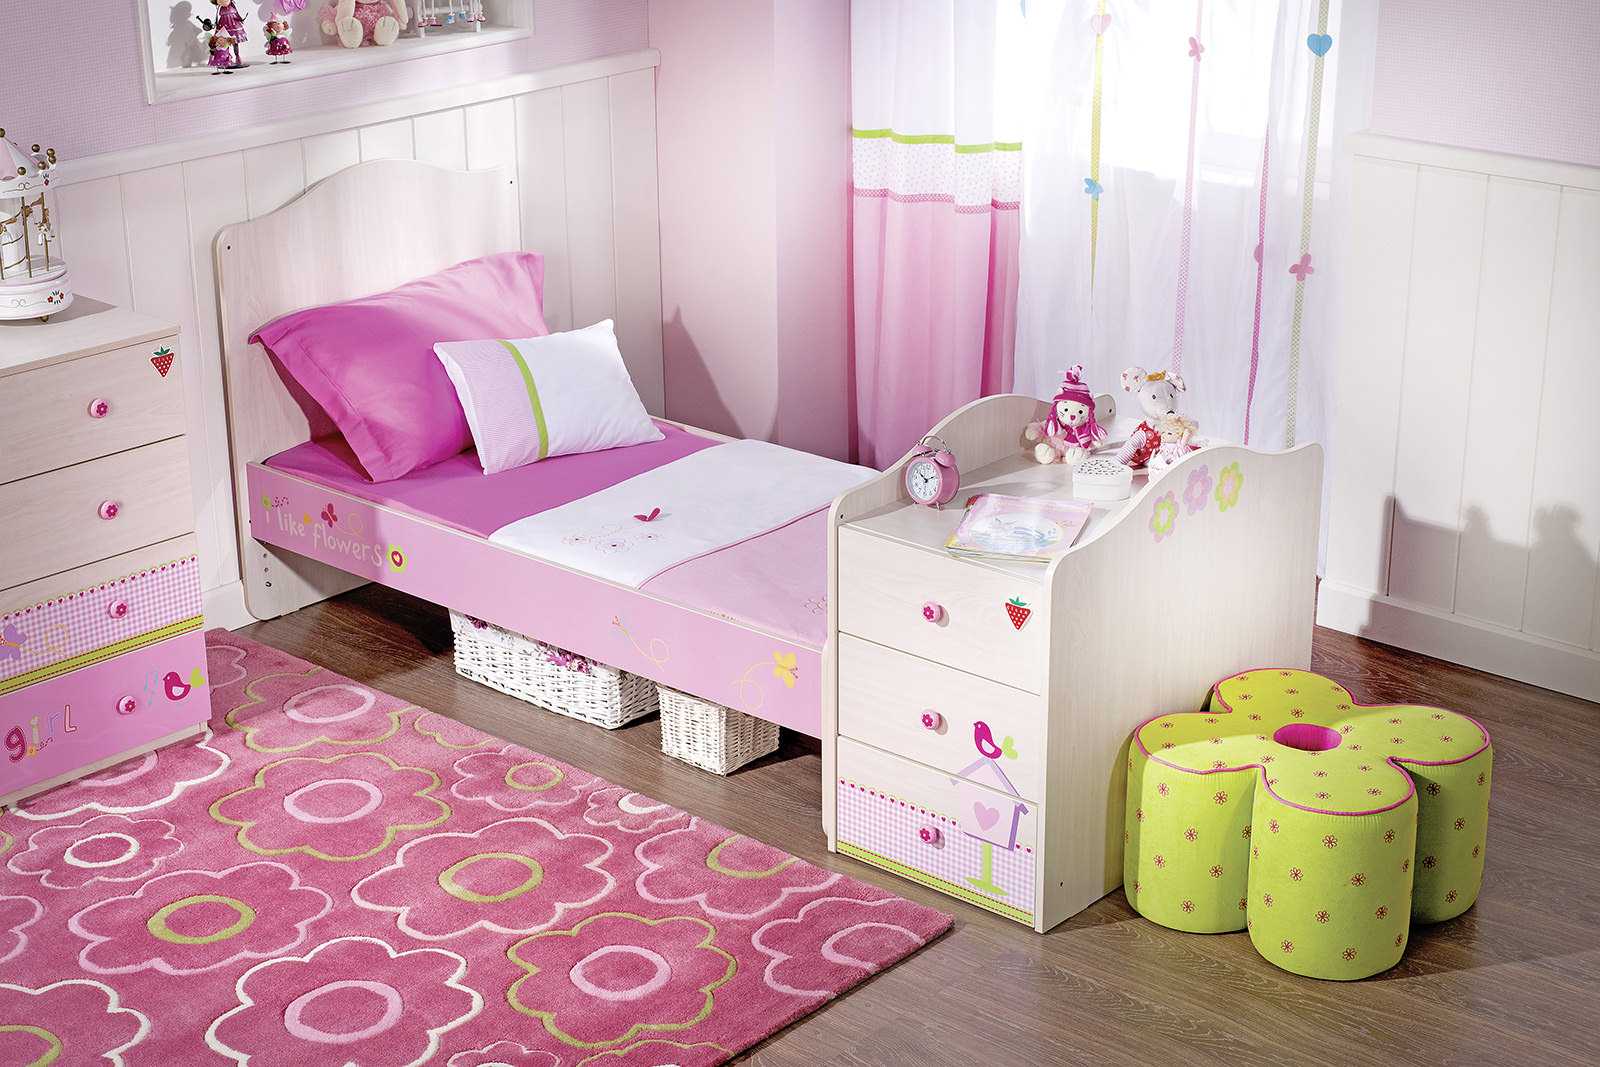 o combinație de roz închis în designul camerei de zi cu alte culori